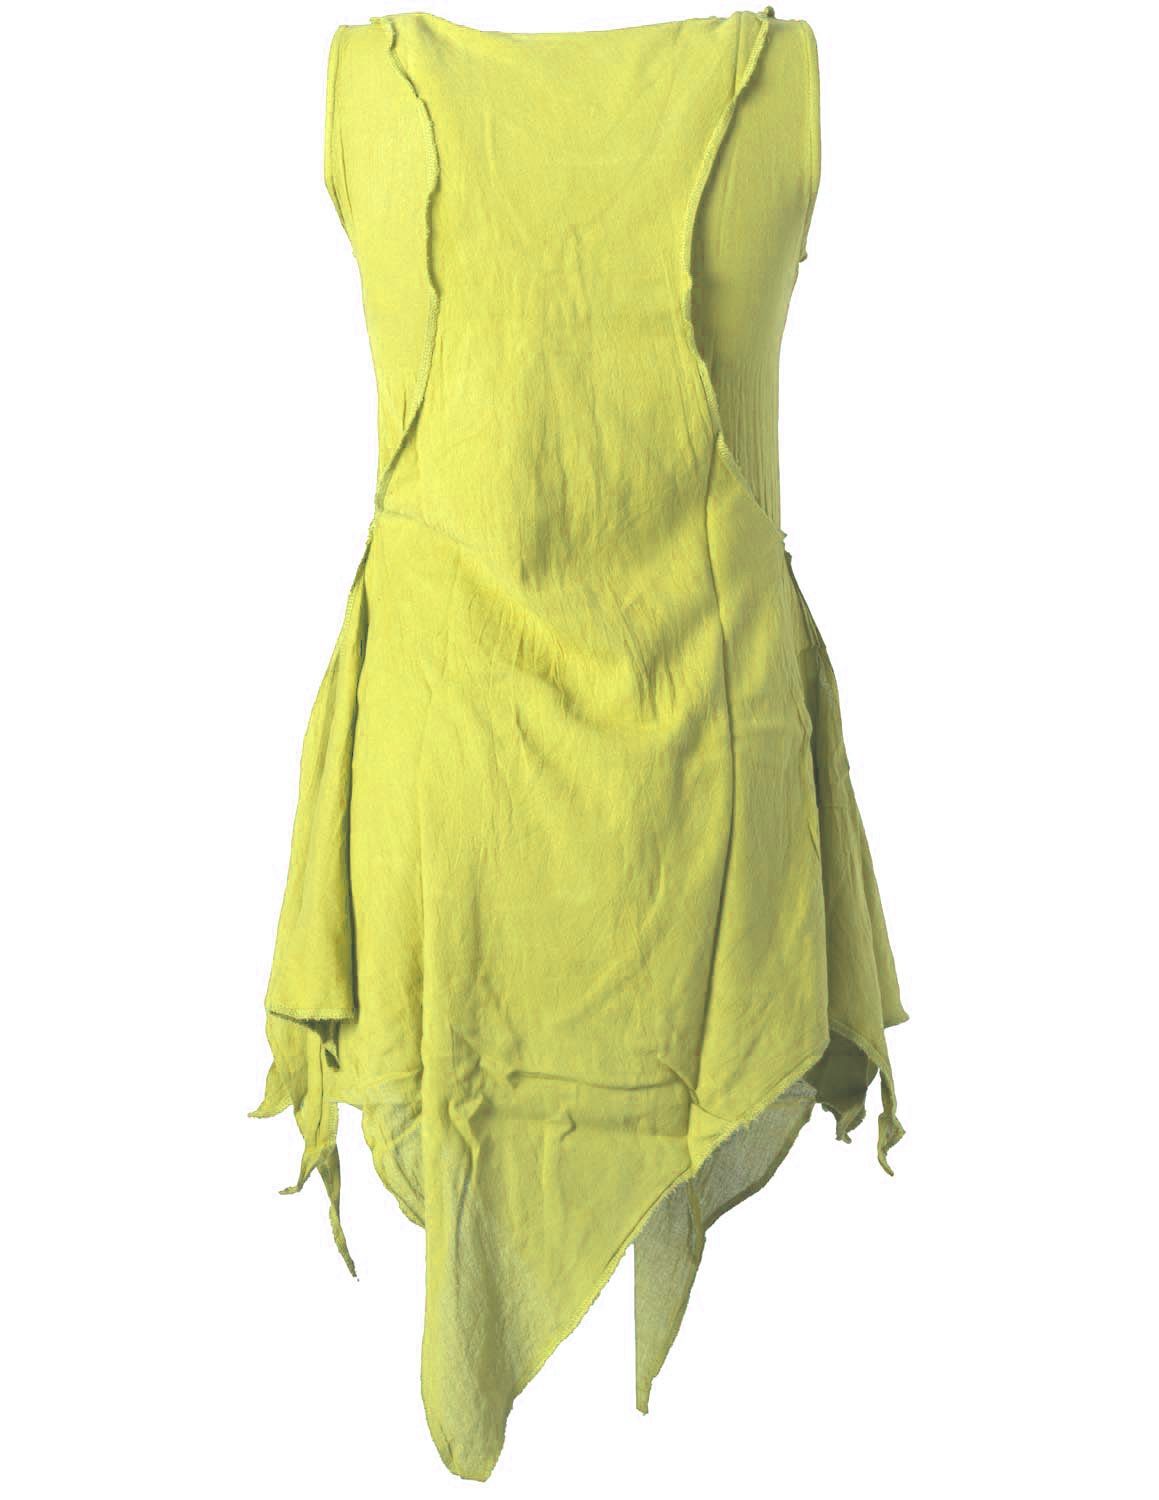 hellgrün Style Lagenlook Elfen, Shirt Used-Look Goa Ethno, Hippie, Tunika Tunikakleid im Zipfeliges Vishes